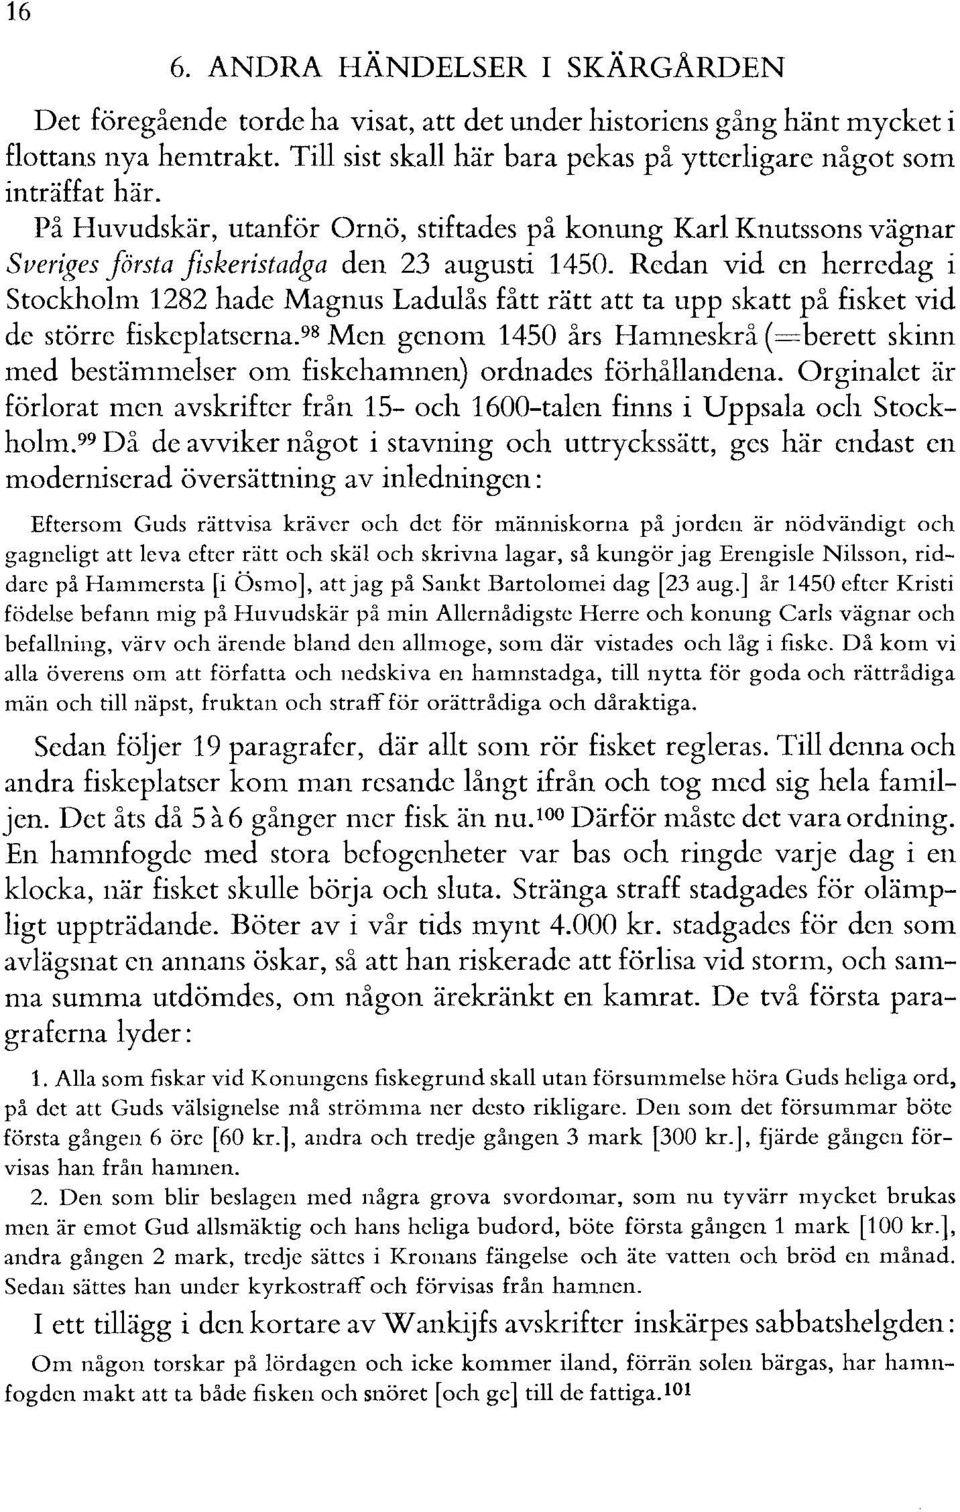 Redan vid en herredag i Stockholm 1282 hade Magnus Ladulås fått rätt att ta upp skatt på fisket vid de större fiskeplatserna.